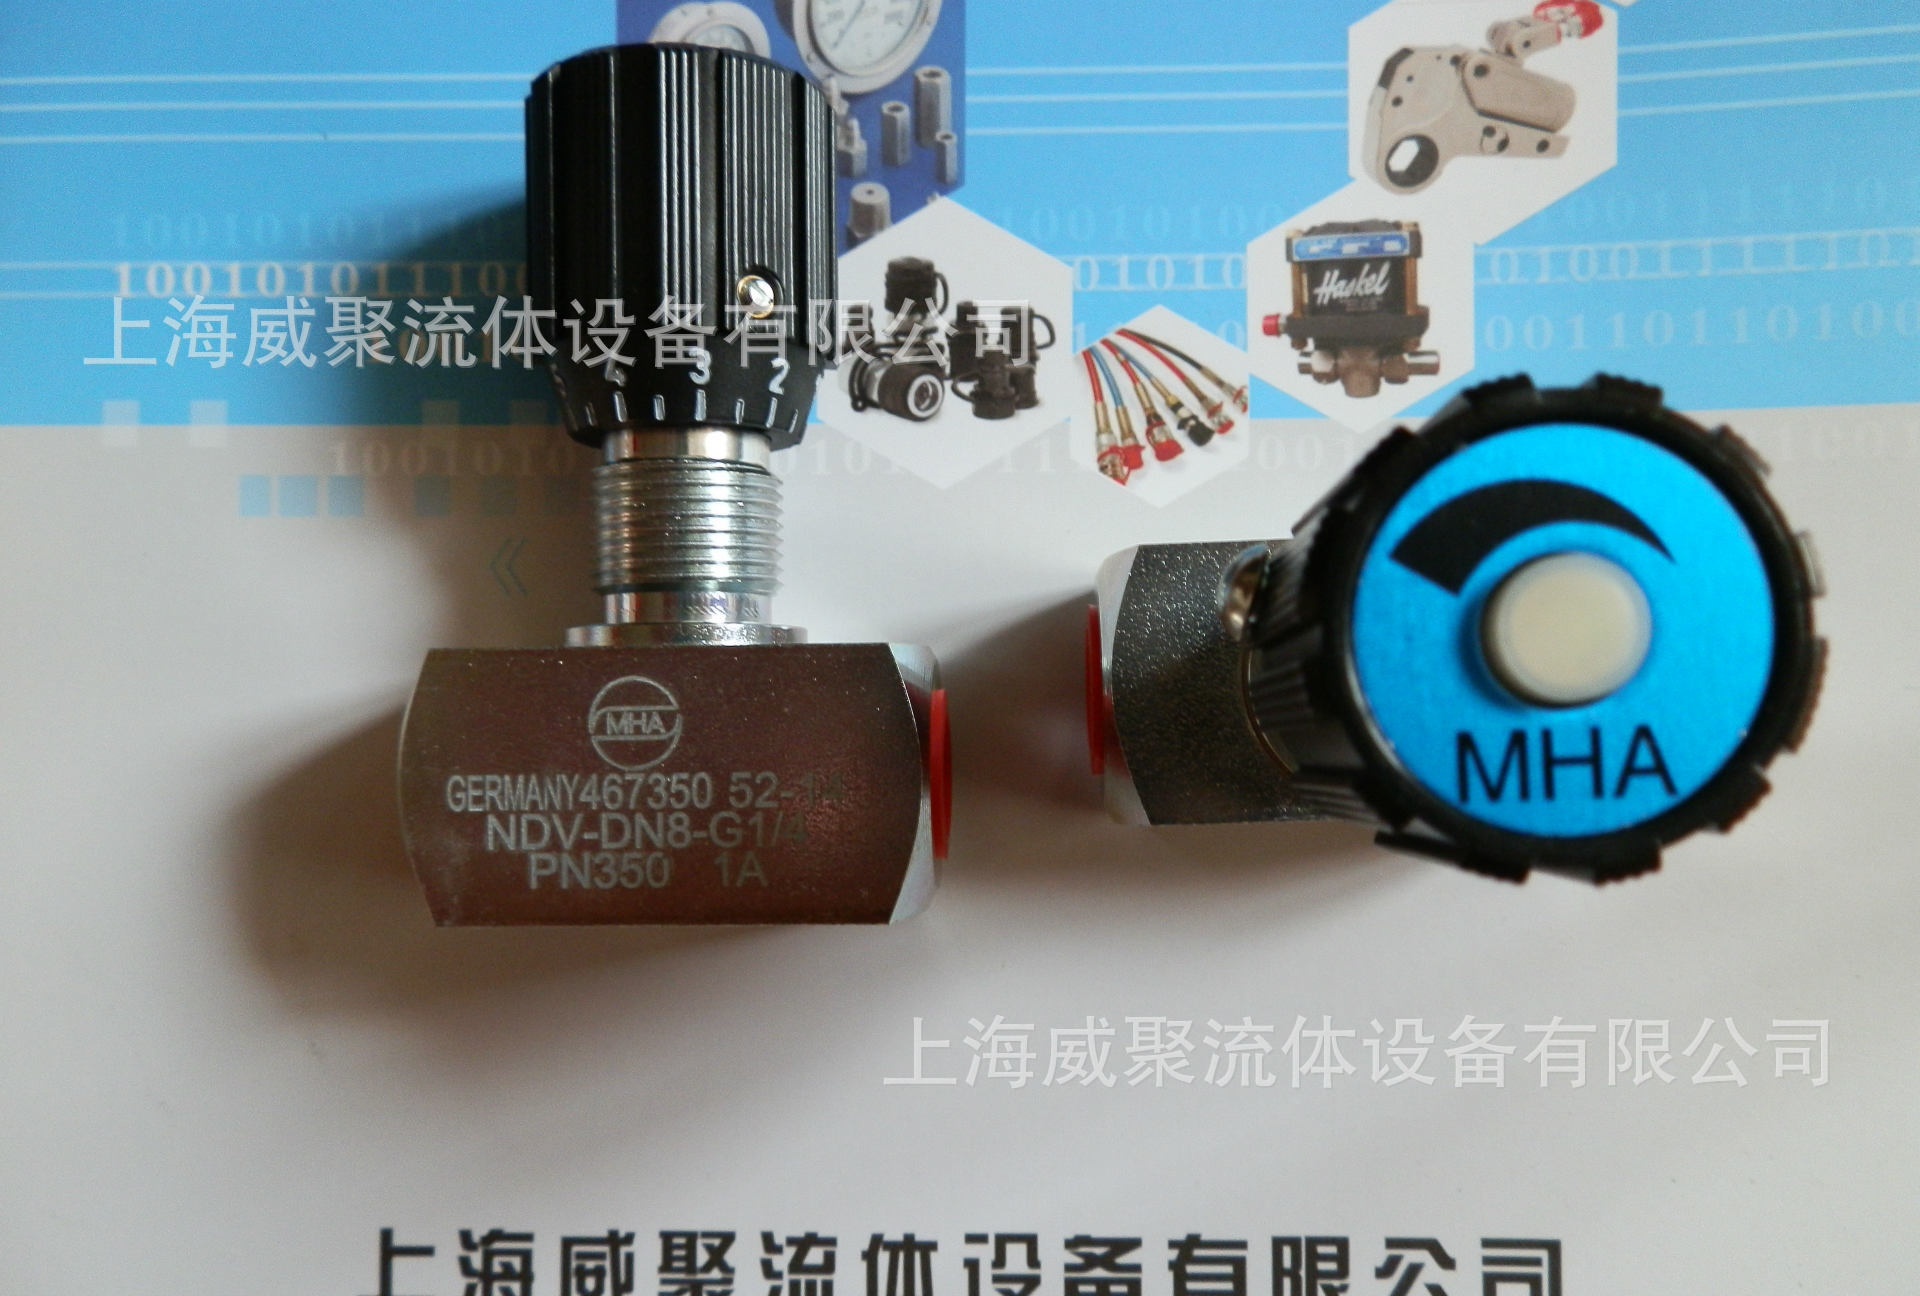 MHA美尔基安针阀型节流阀（管道安装），节流阀。针阀